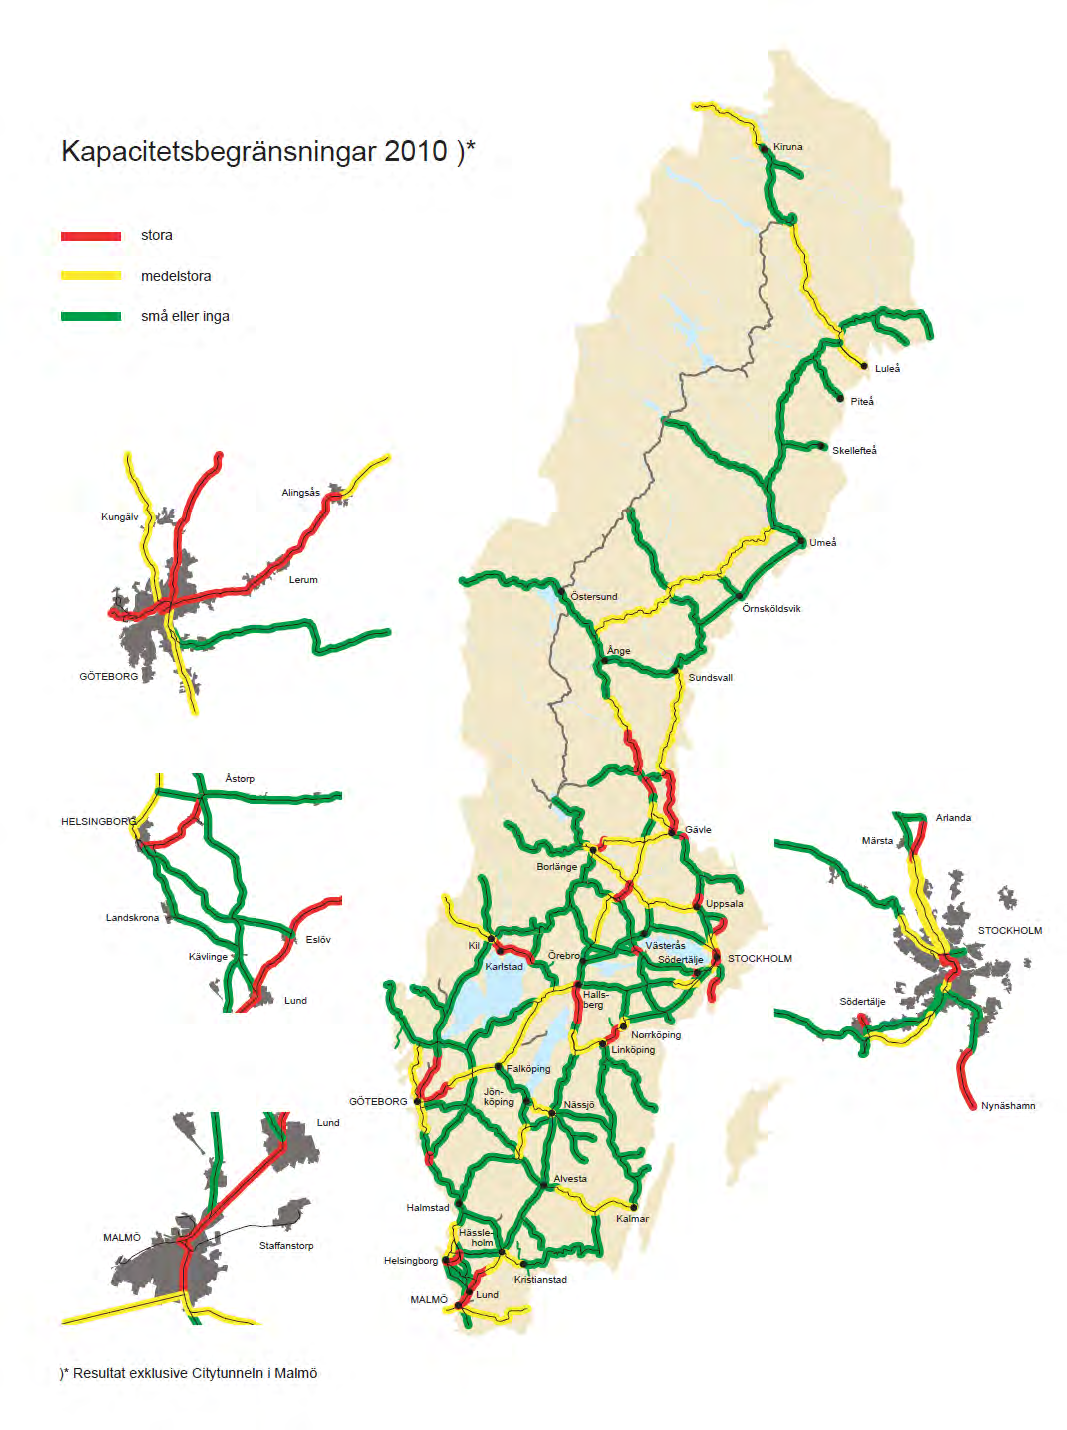 Bild 2.1: Kapacitetsbegränsningar i det svenska järnvägsnätet 2010 2.